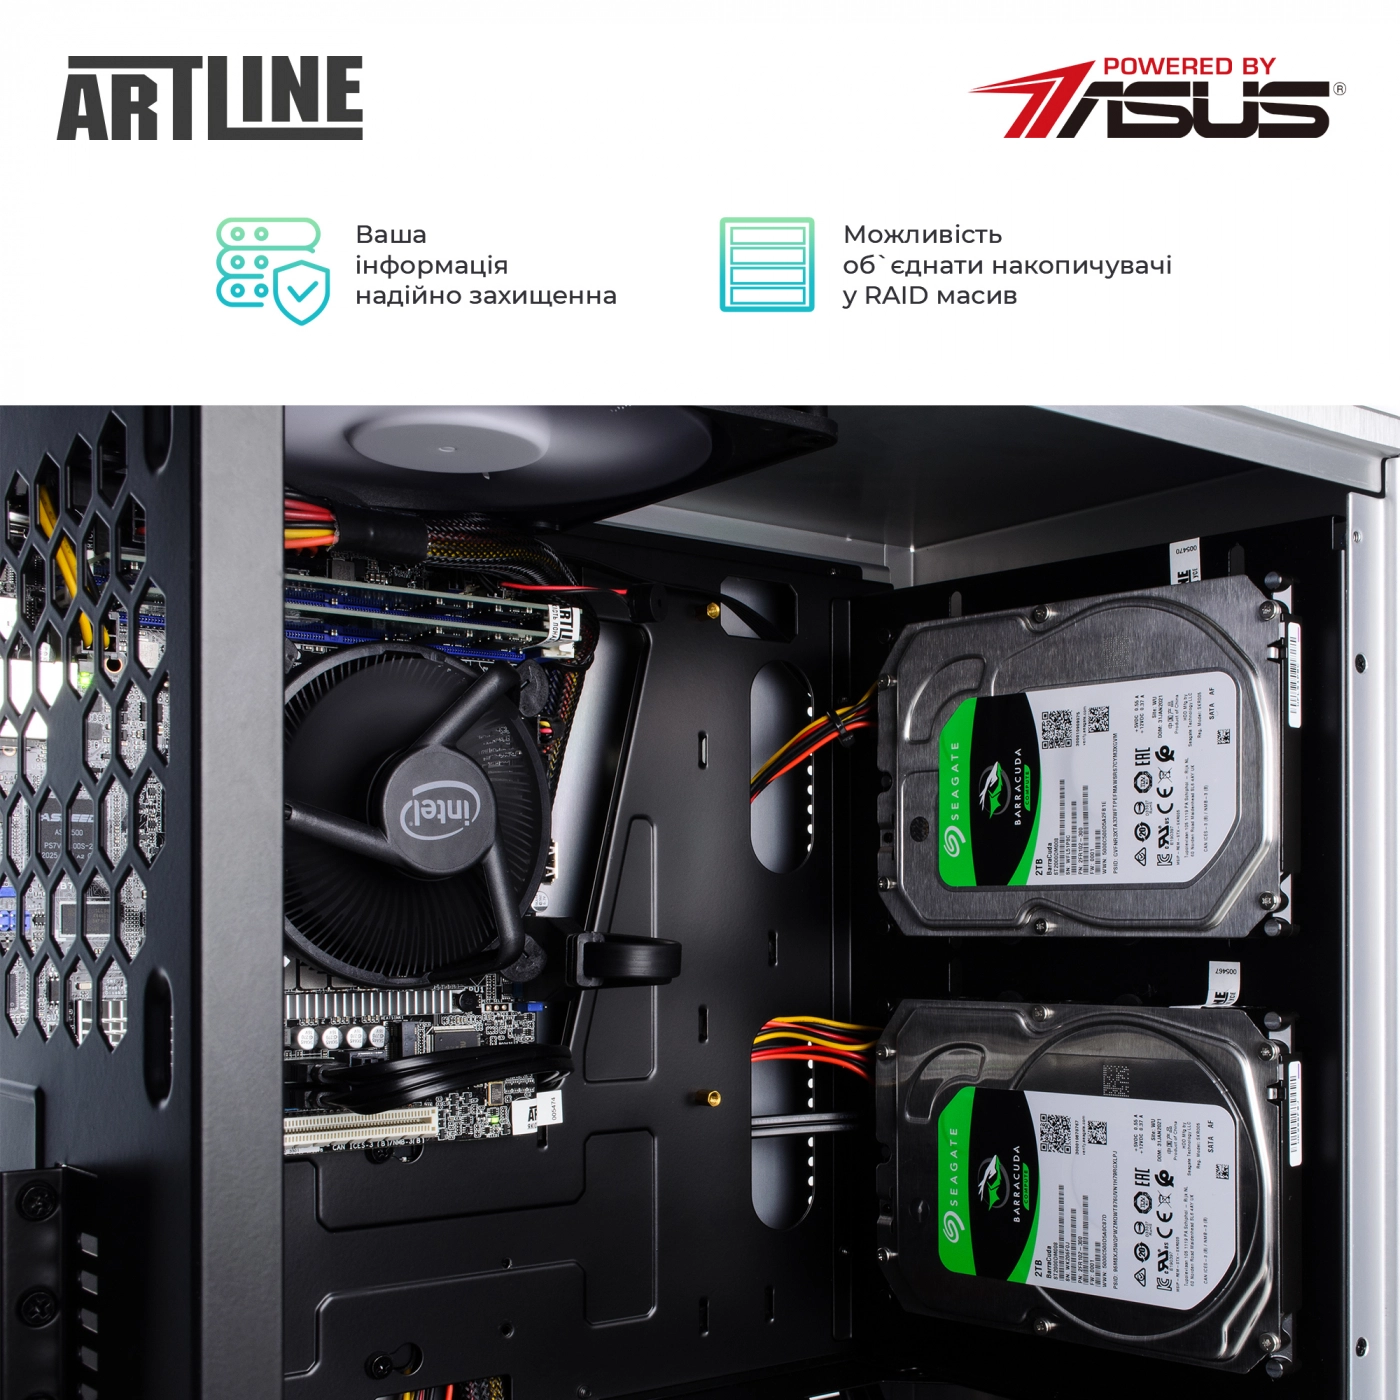 Купить Сервер ARTLINE Business T21v02 - фото 7